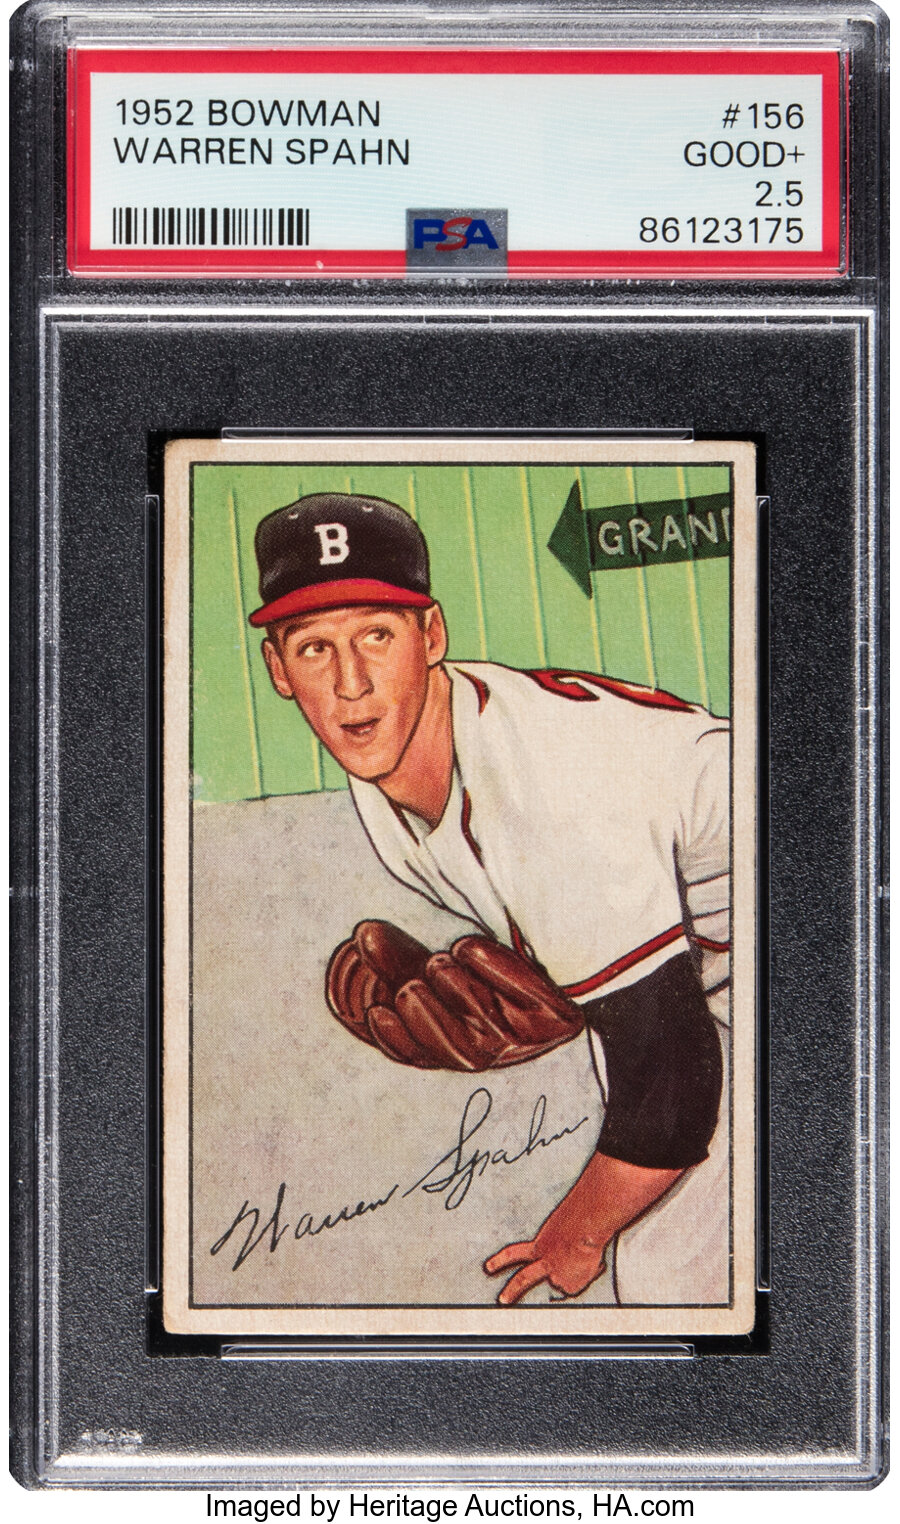 1952 Bowman Warren Spahn #156 PSA Good+ 2.5